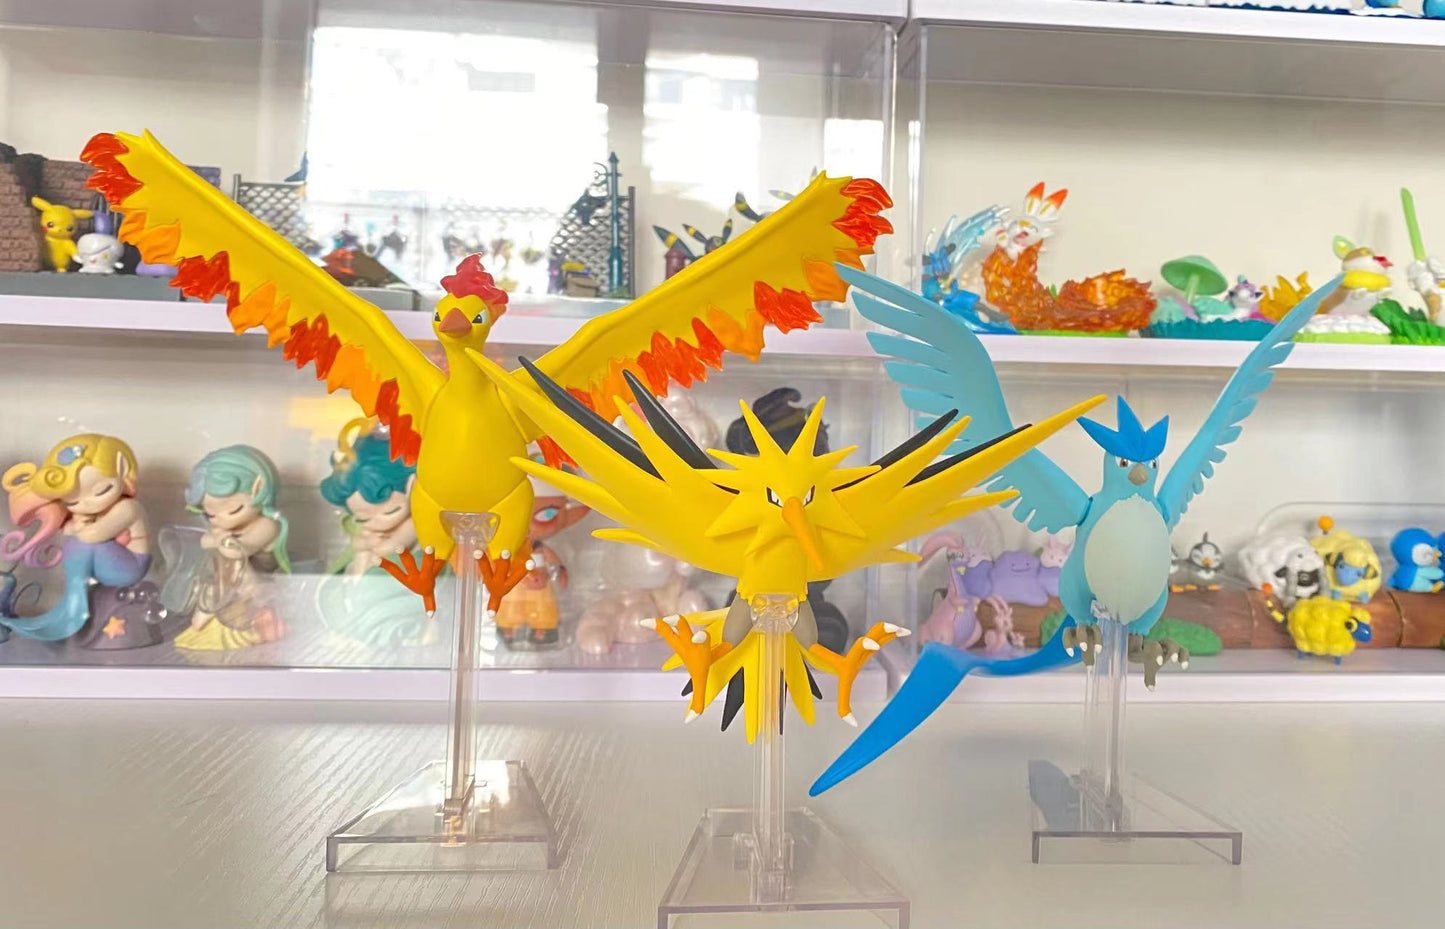 Anime Pokemon 1/20 Proportional World Legendary Bird Zapdos Articuno Moltres  Figures Collectible Model Toys Birthday